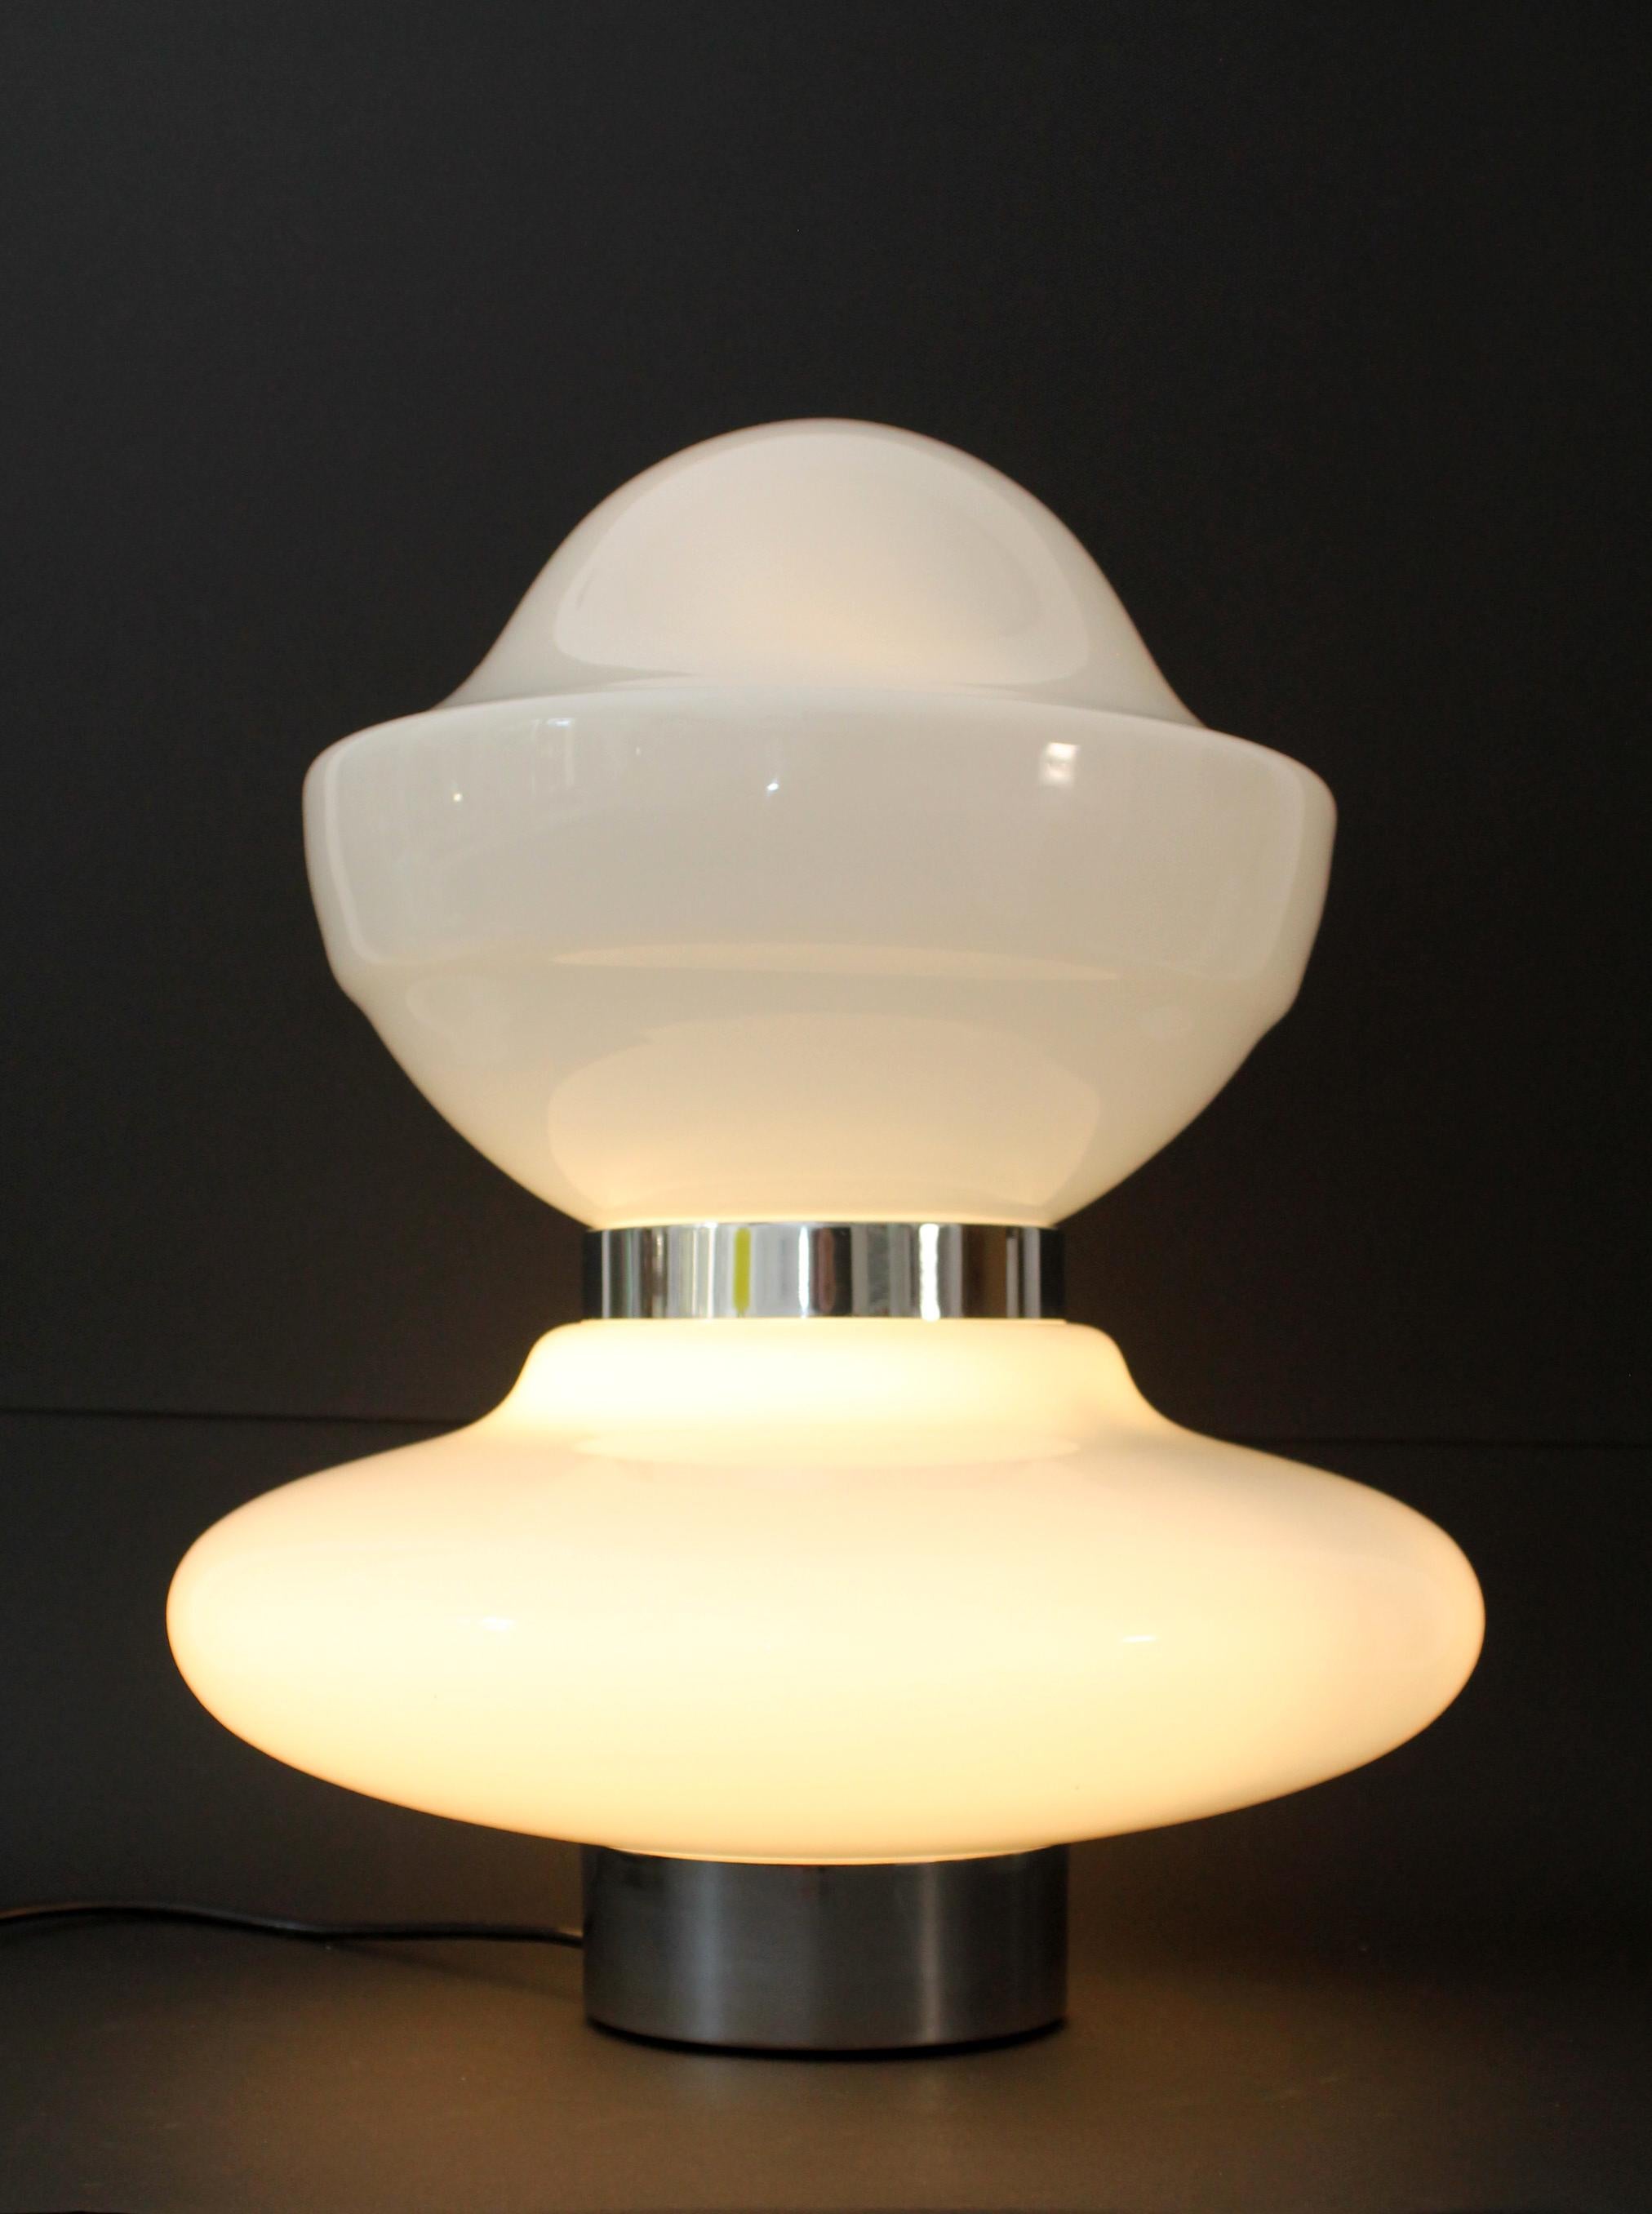 1960er Sergio Mazza Tisch Stehlampe Glas atemberaubende Schreibtisch/Tischlampe.
Opalglas mit Chromstahlringen dazwischen.

Originaler Netzschalter (ikonischer 3-Wege-Fußschalter von Vimar), mit dem Sie nur den Sockel, nur den oberen/oberen